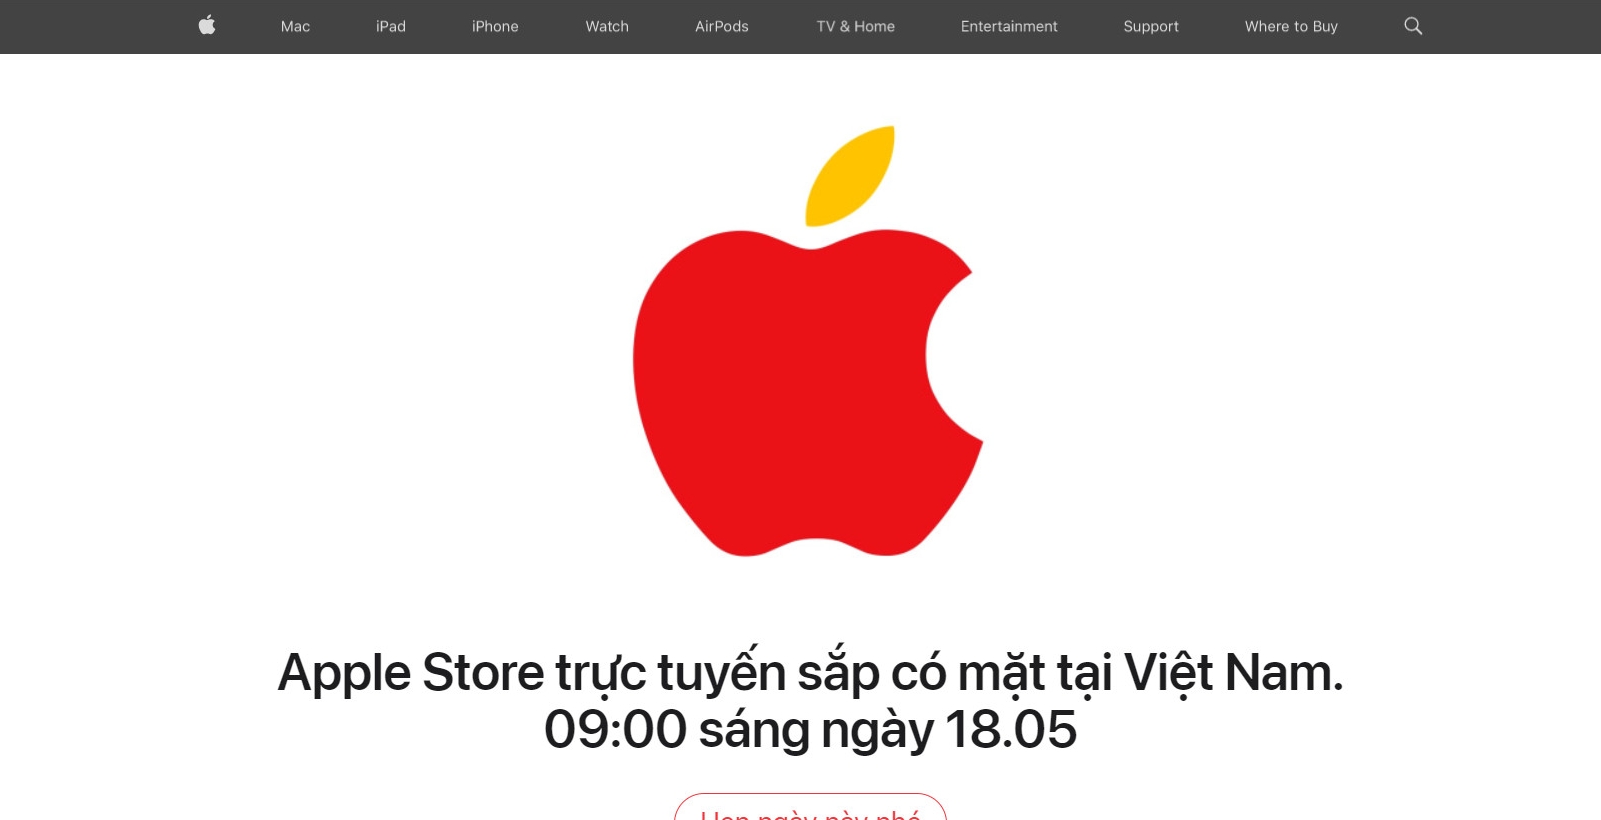 Trước ngày Apple Store ra mắt, lượng iPhone nhập về Việt Nam khan hiếm, có hay không chuyện hãng vừa đá bóng, vừa thổi còi - Ảnh 1.